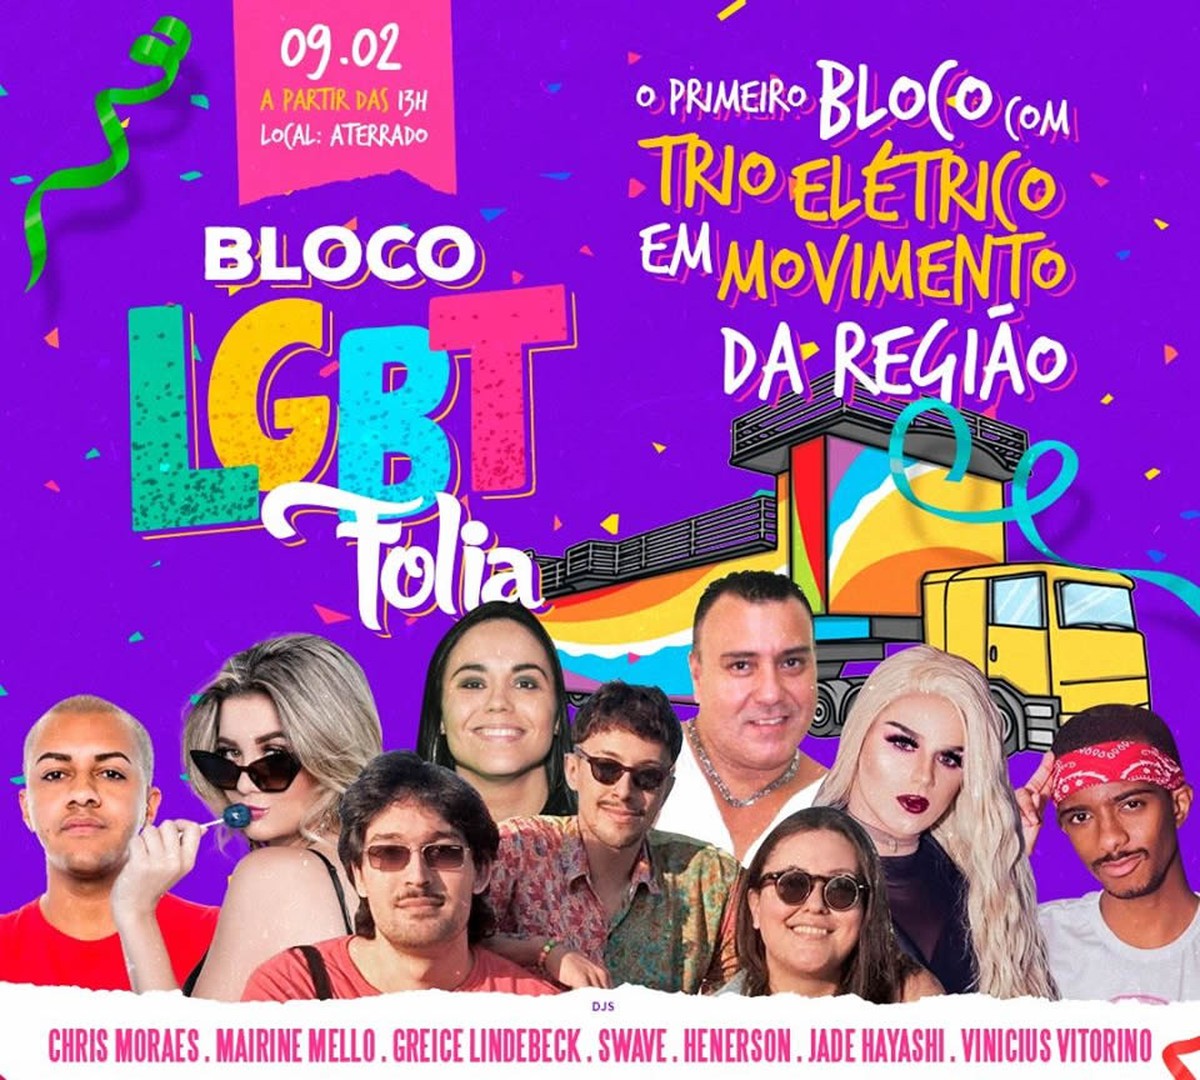 Bloco Lgbt Folia Celebra Carnaval Com Diversidade Em Volta Redonda Sul Do Rio E Costa Verde G1